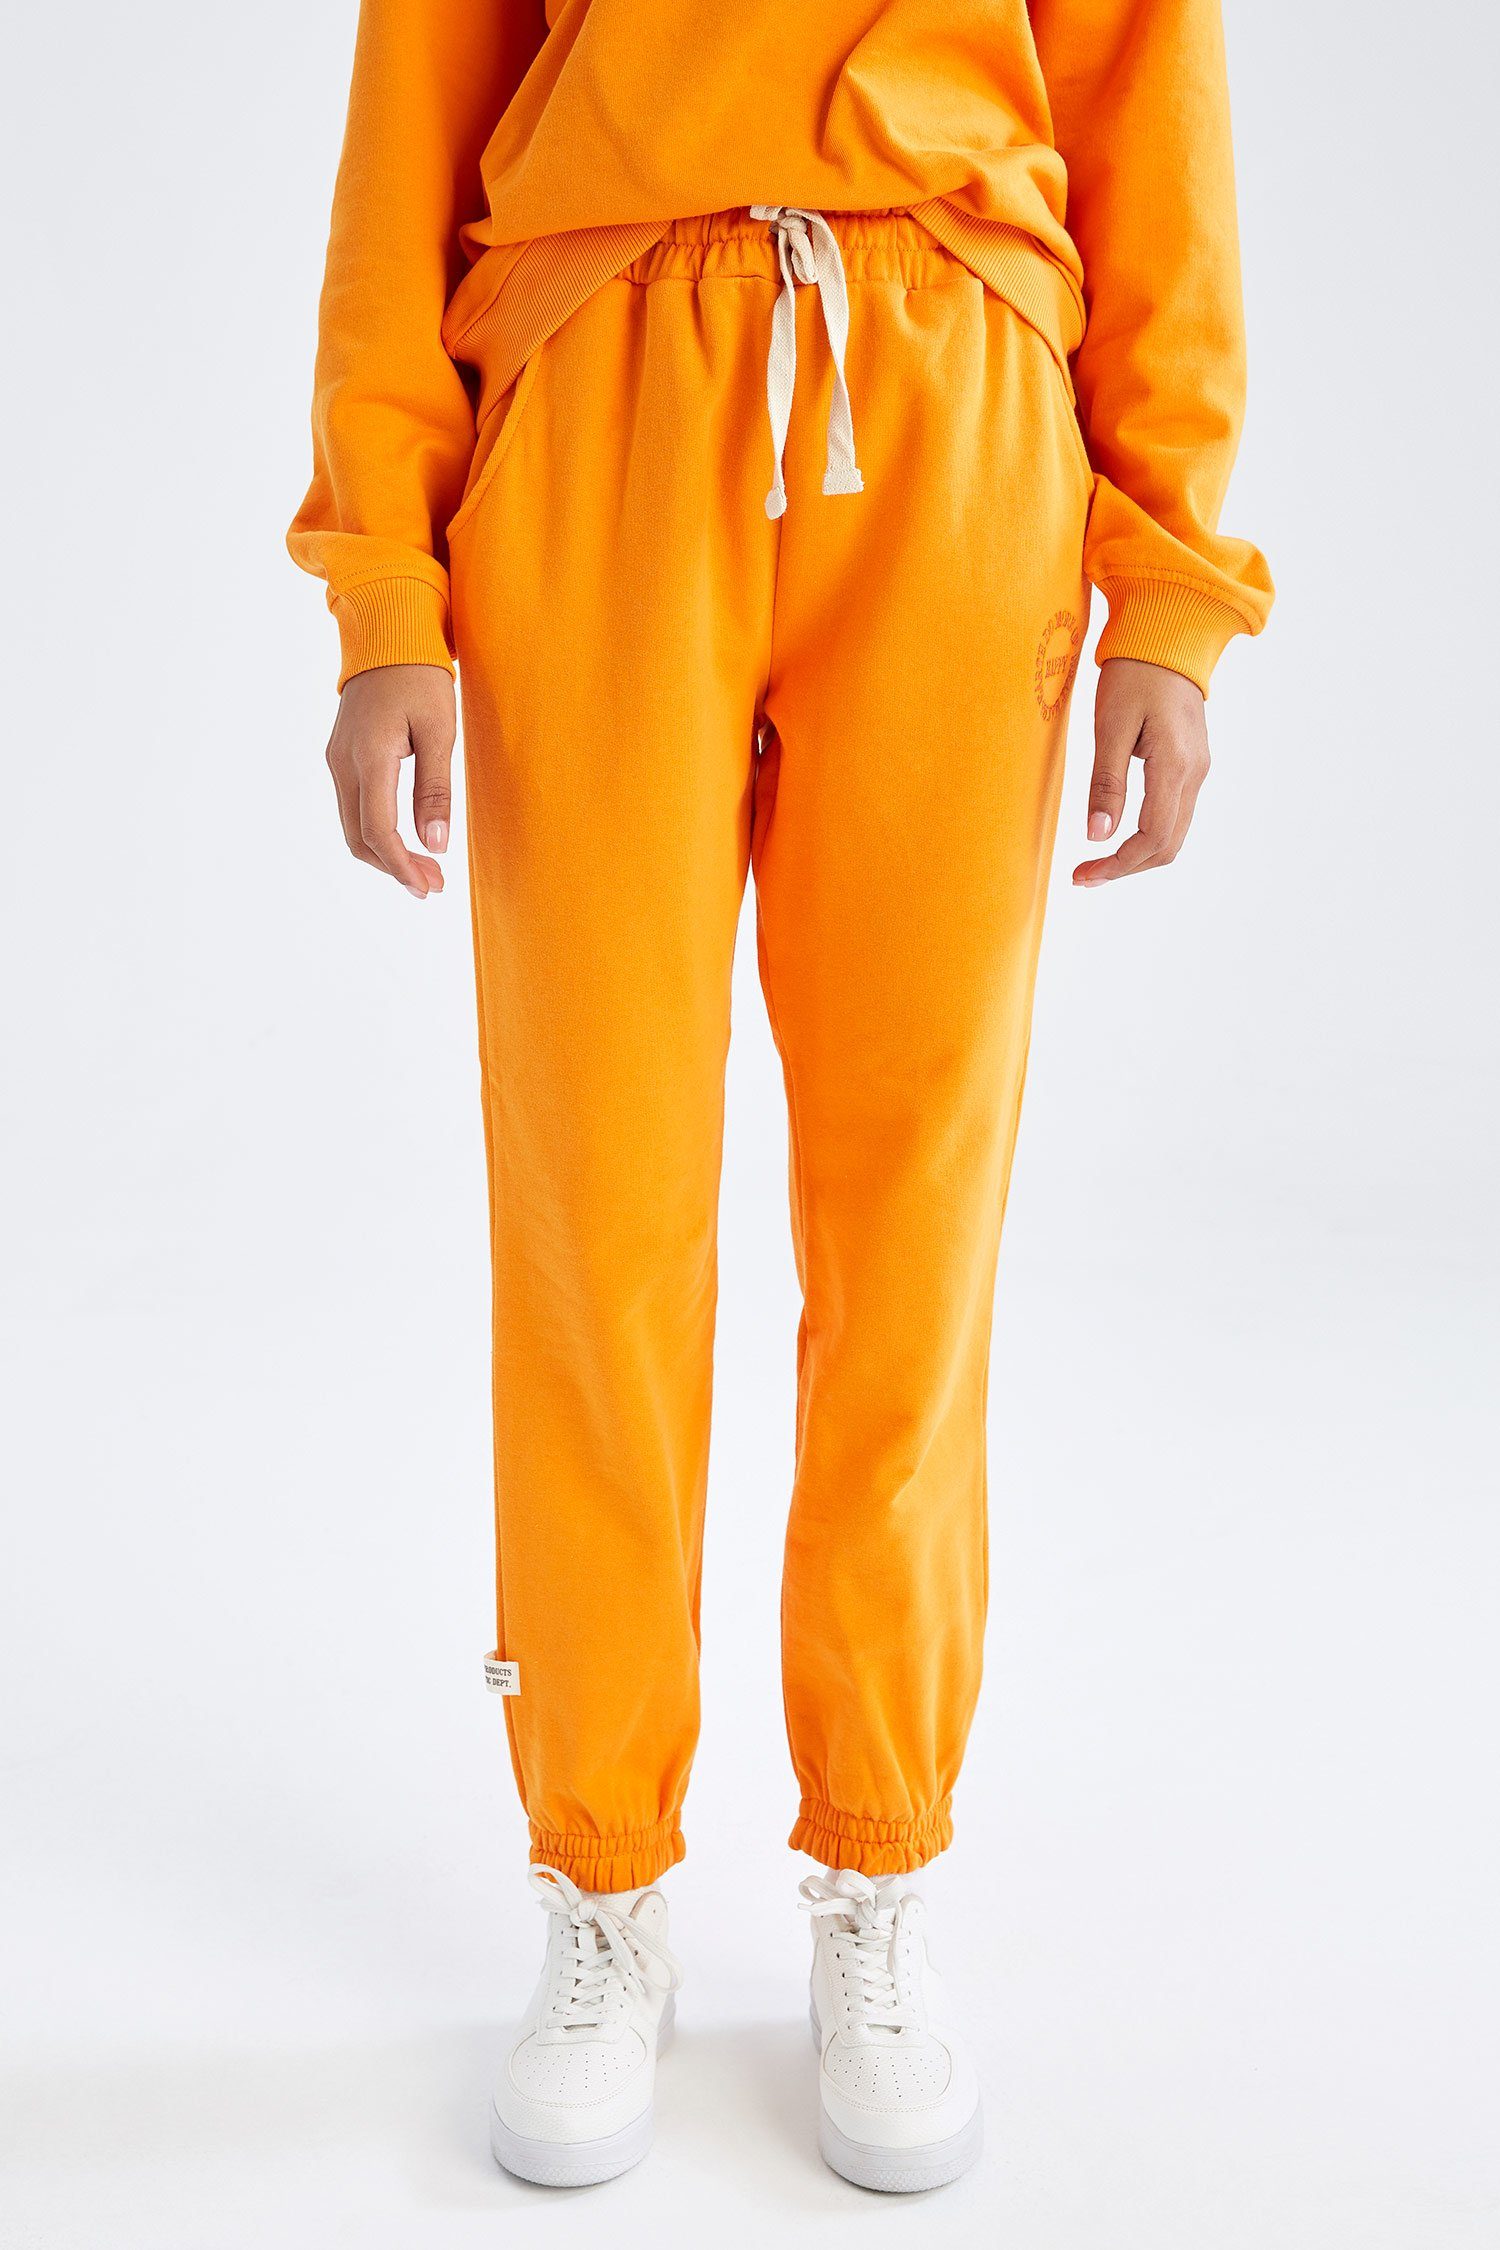 Orangene Damen Jogginghosen online kaufen | OTTO